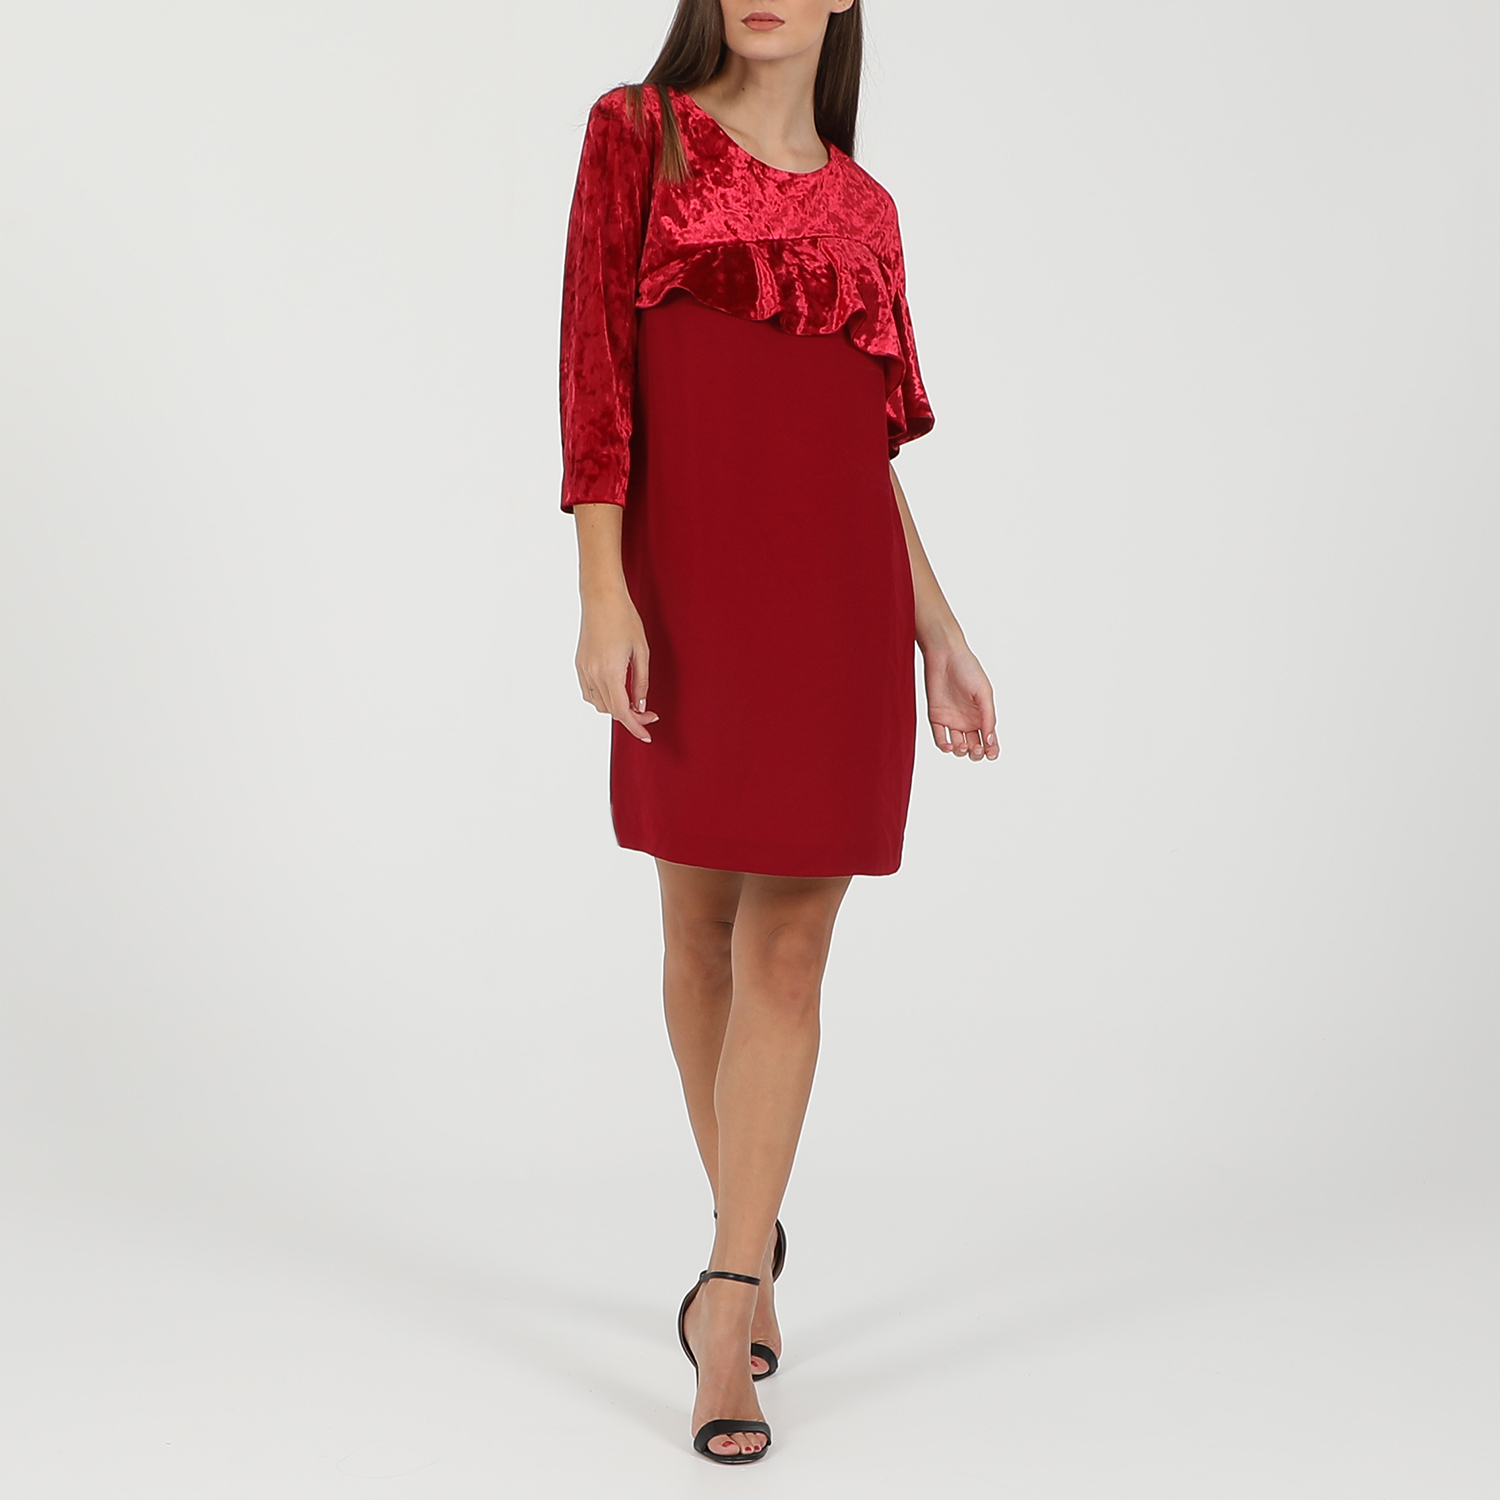 Γυναικεία/Ρούχα/Φορέματα/Μίνι ANNARITA - Γυναικείο mini φόρεμα ANNARITA κόκκινο